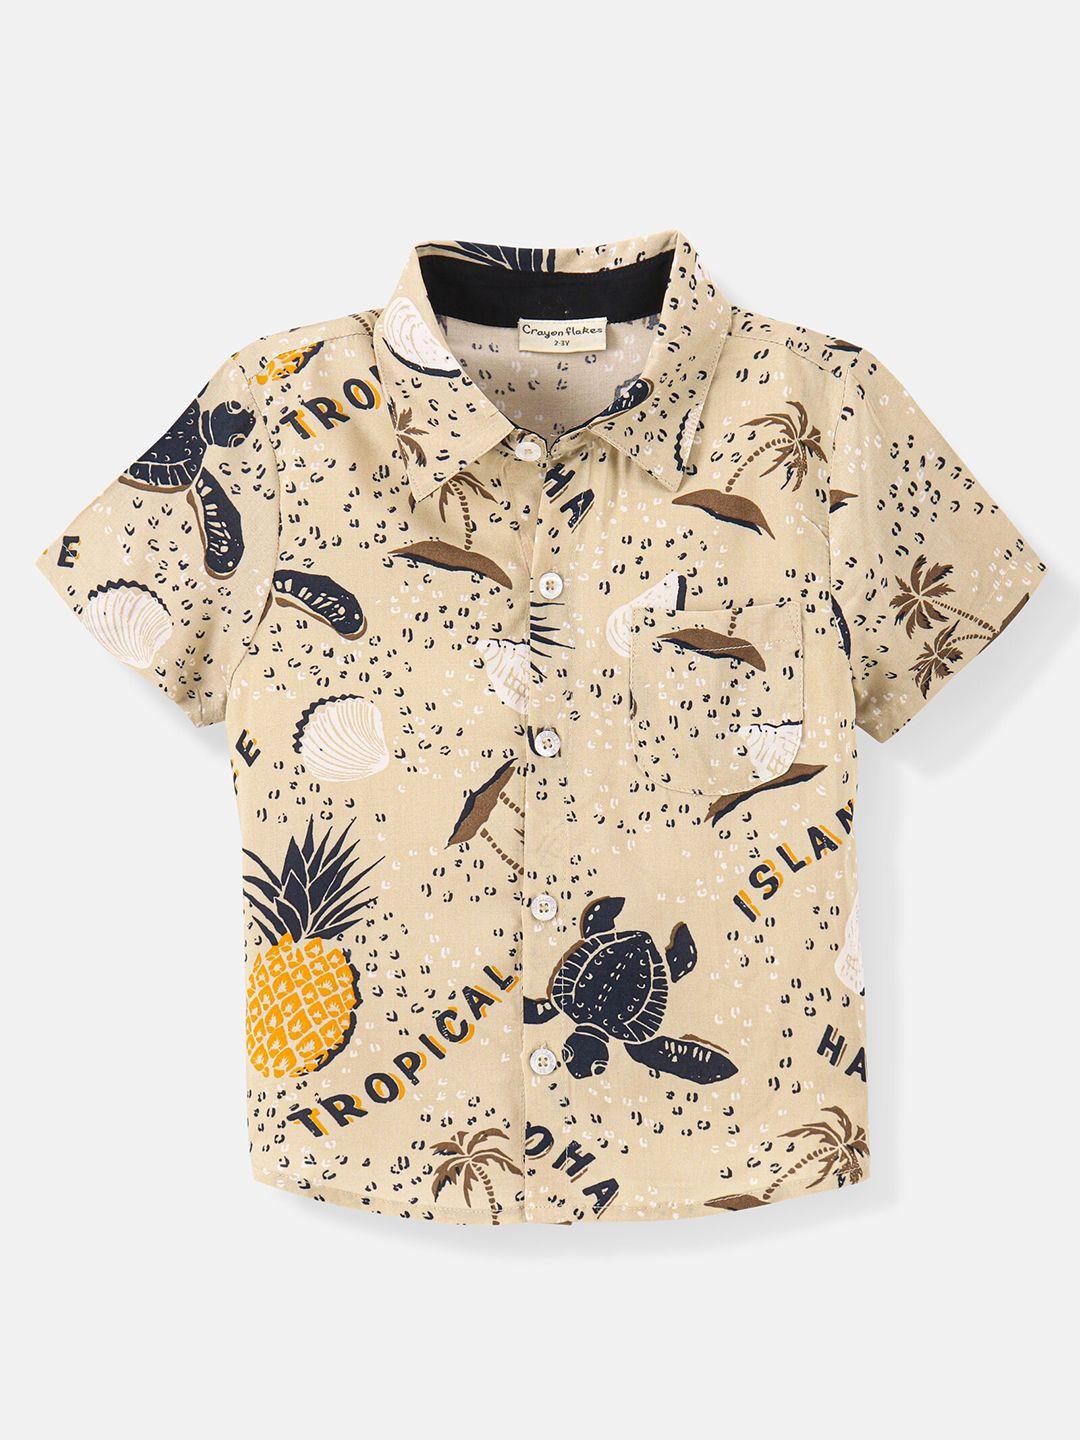 crayonflakes boys conversational printed casual shirt